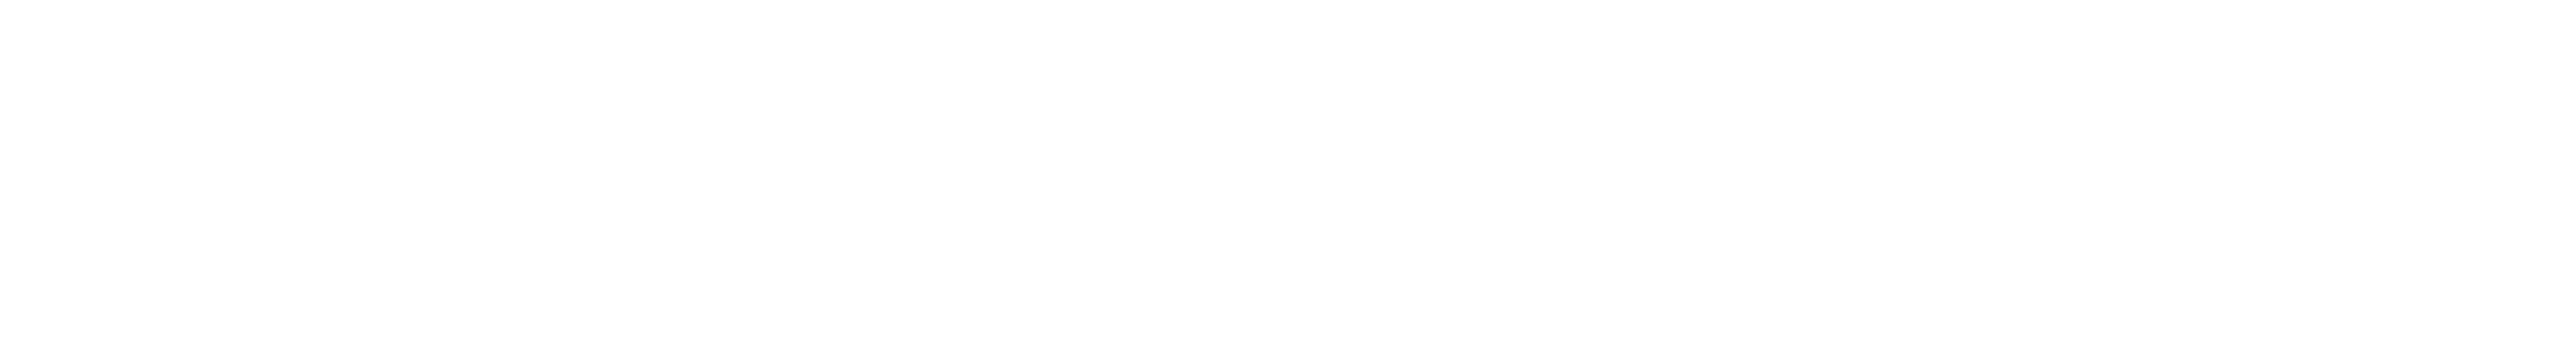 Carlton Care Logo Design PNG image